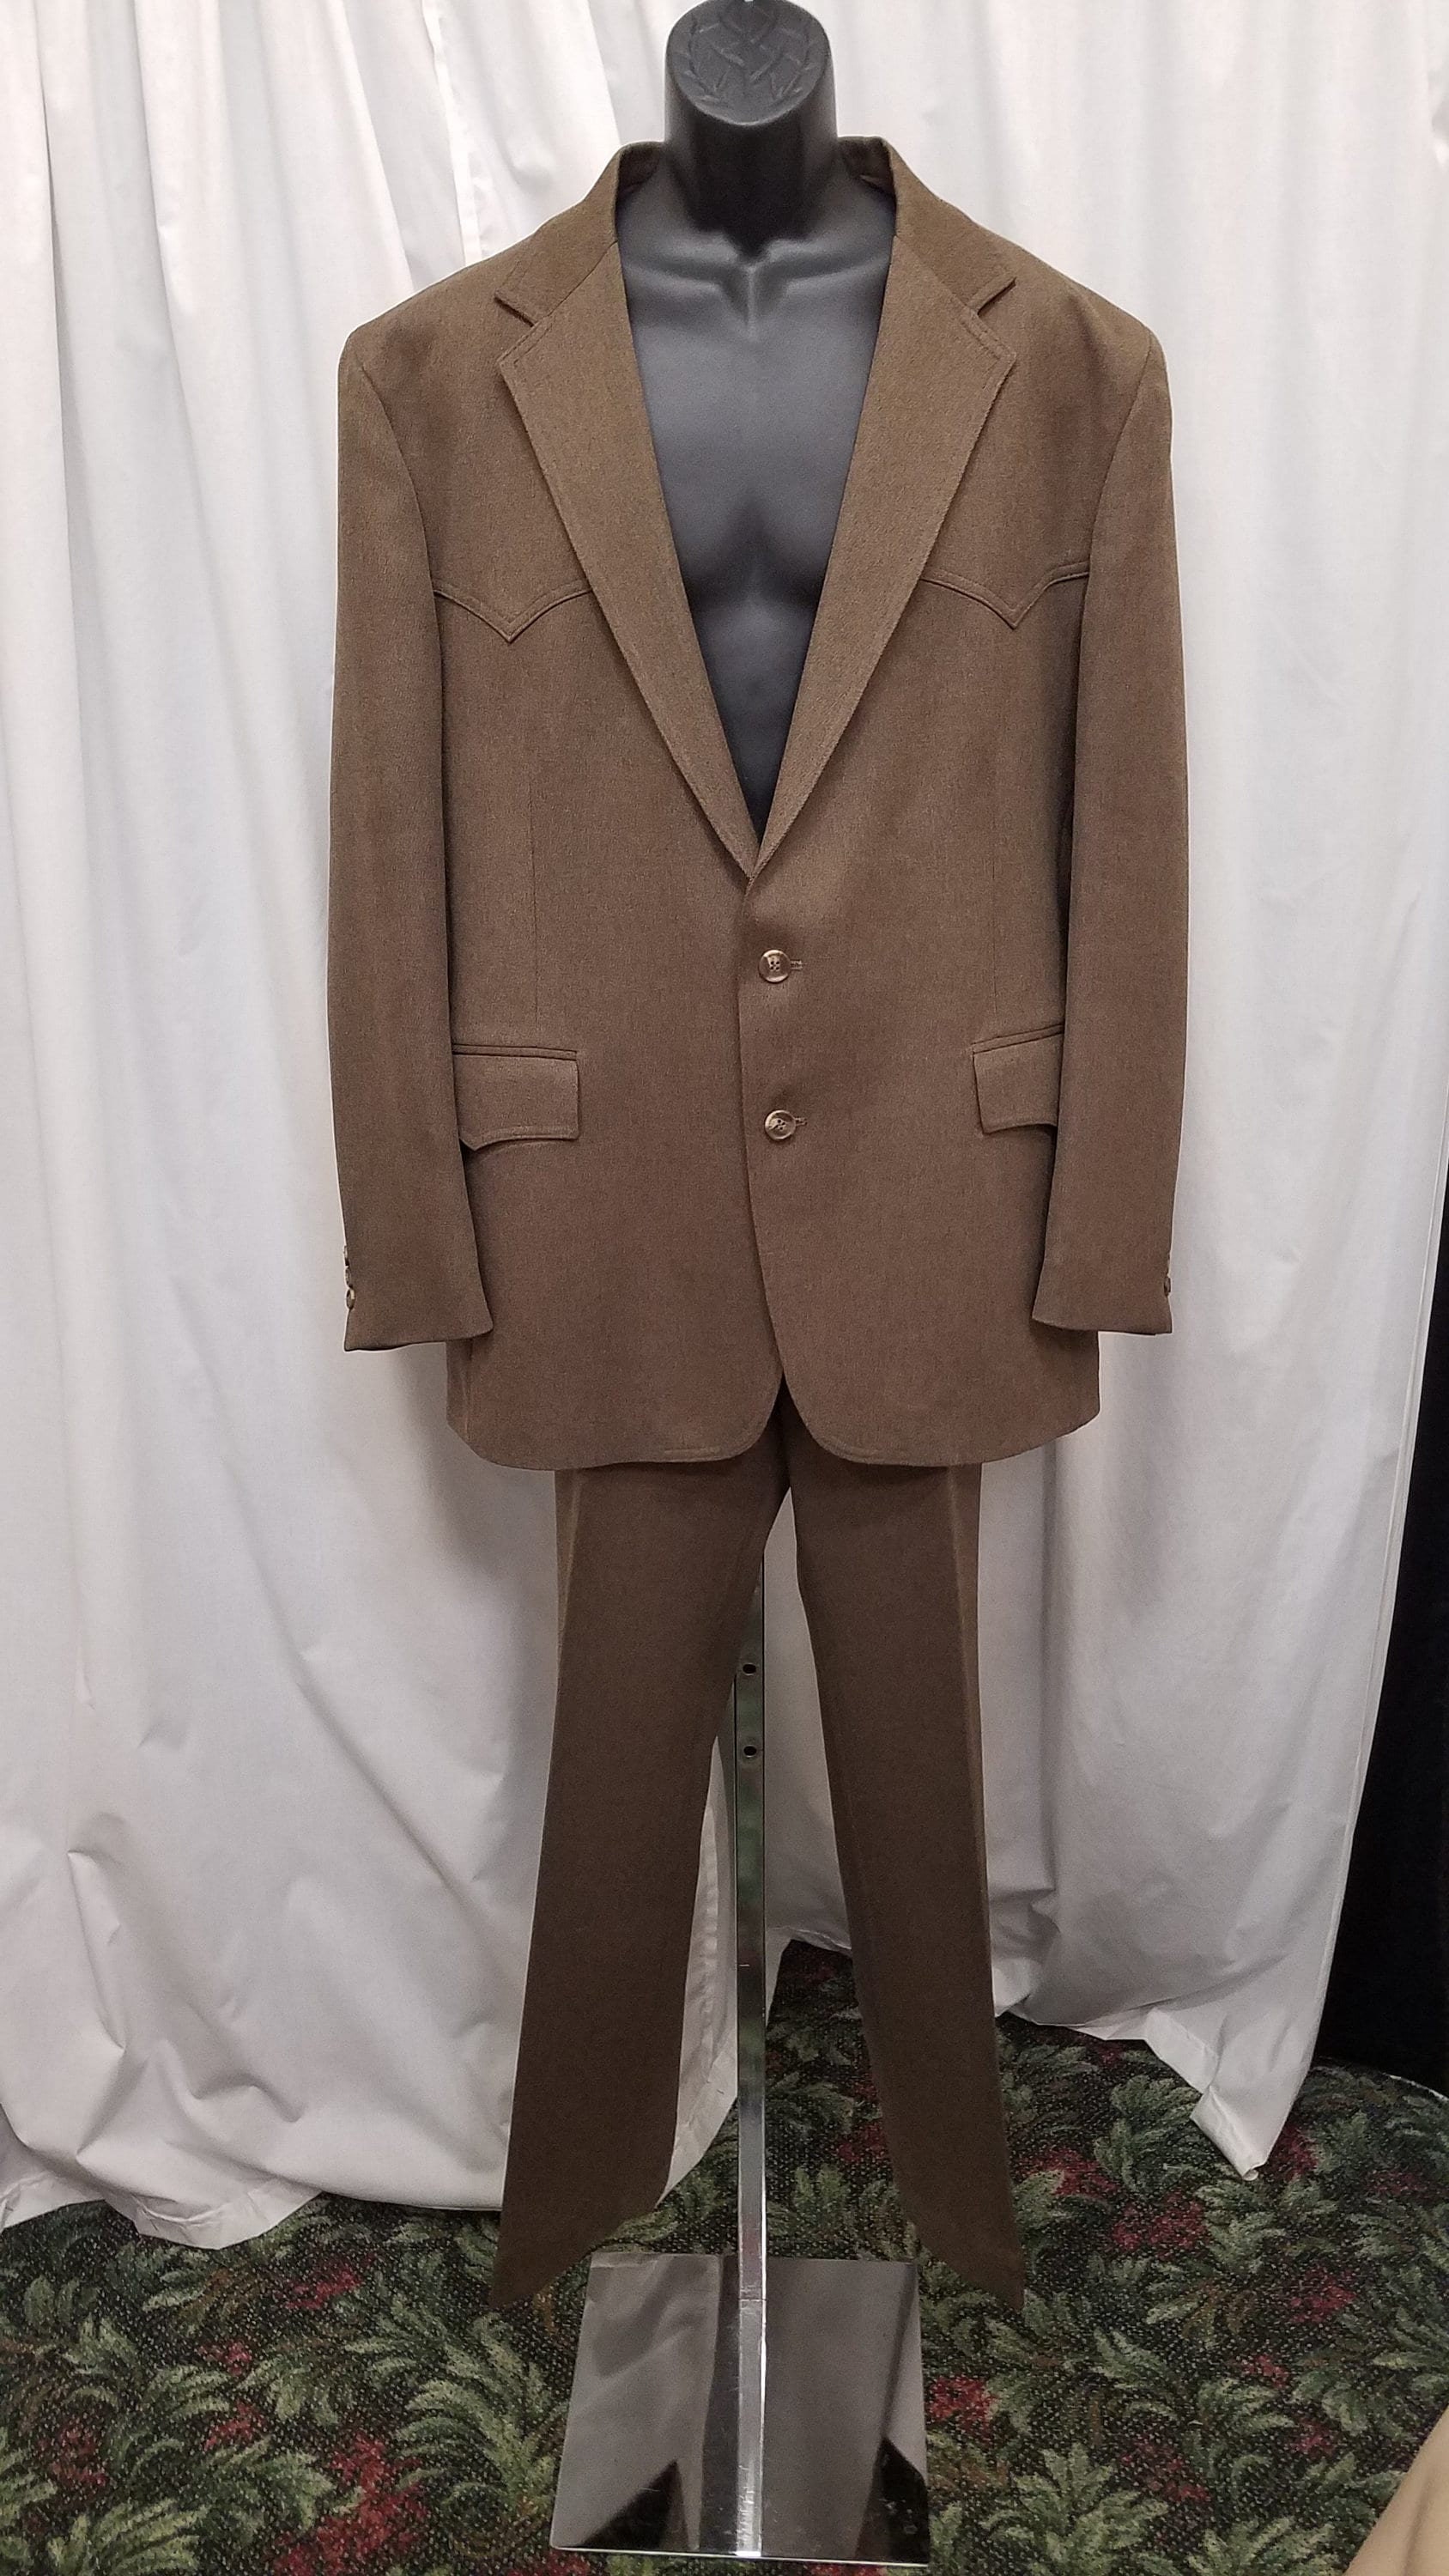 Buy Vintage Brown Suit Online In India -  India